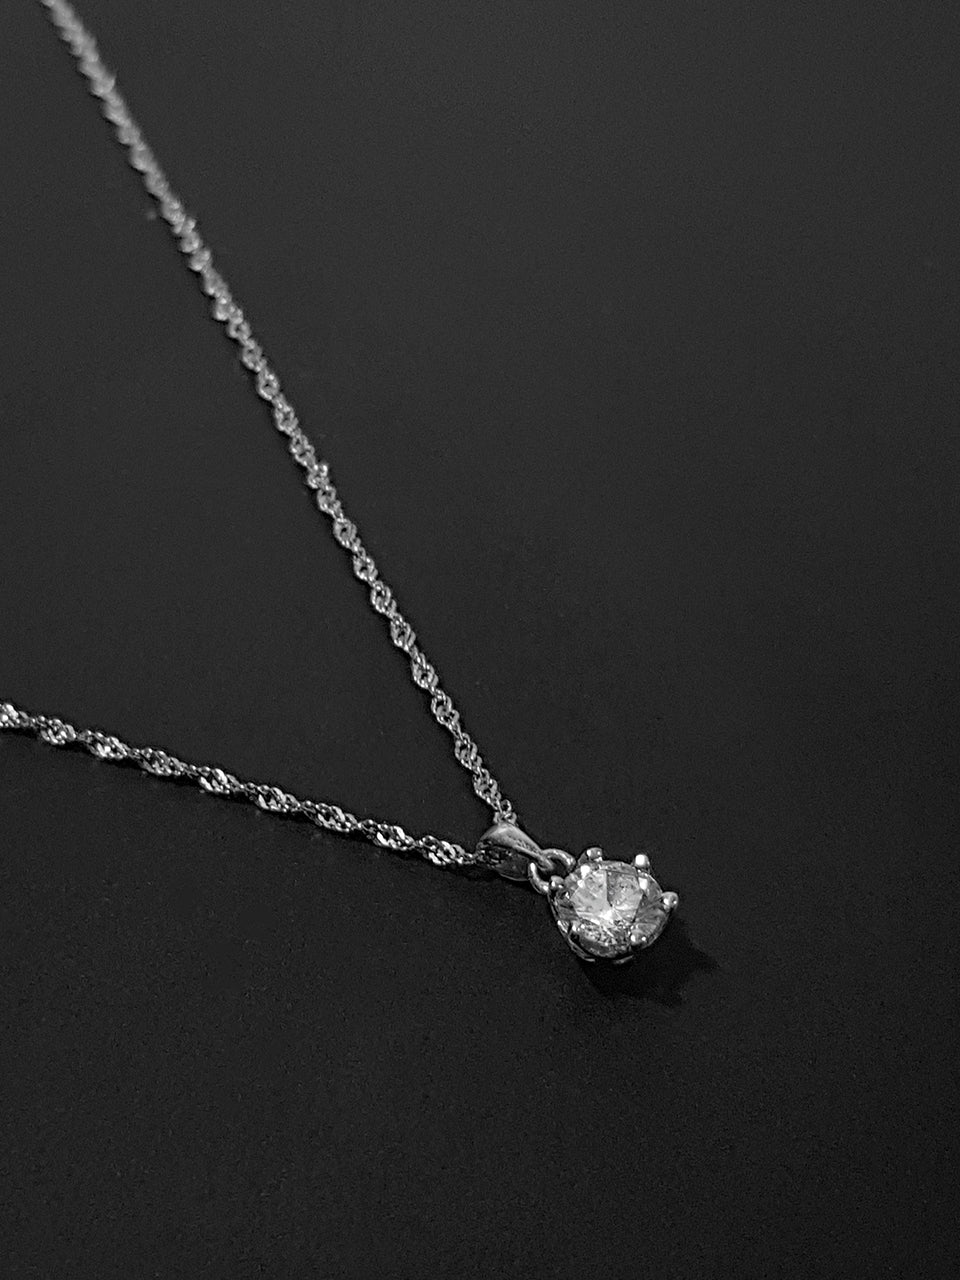 [Silver925] Sanssouci Pendant Necklace